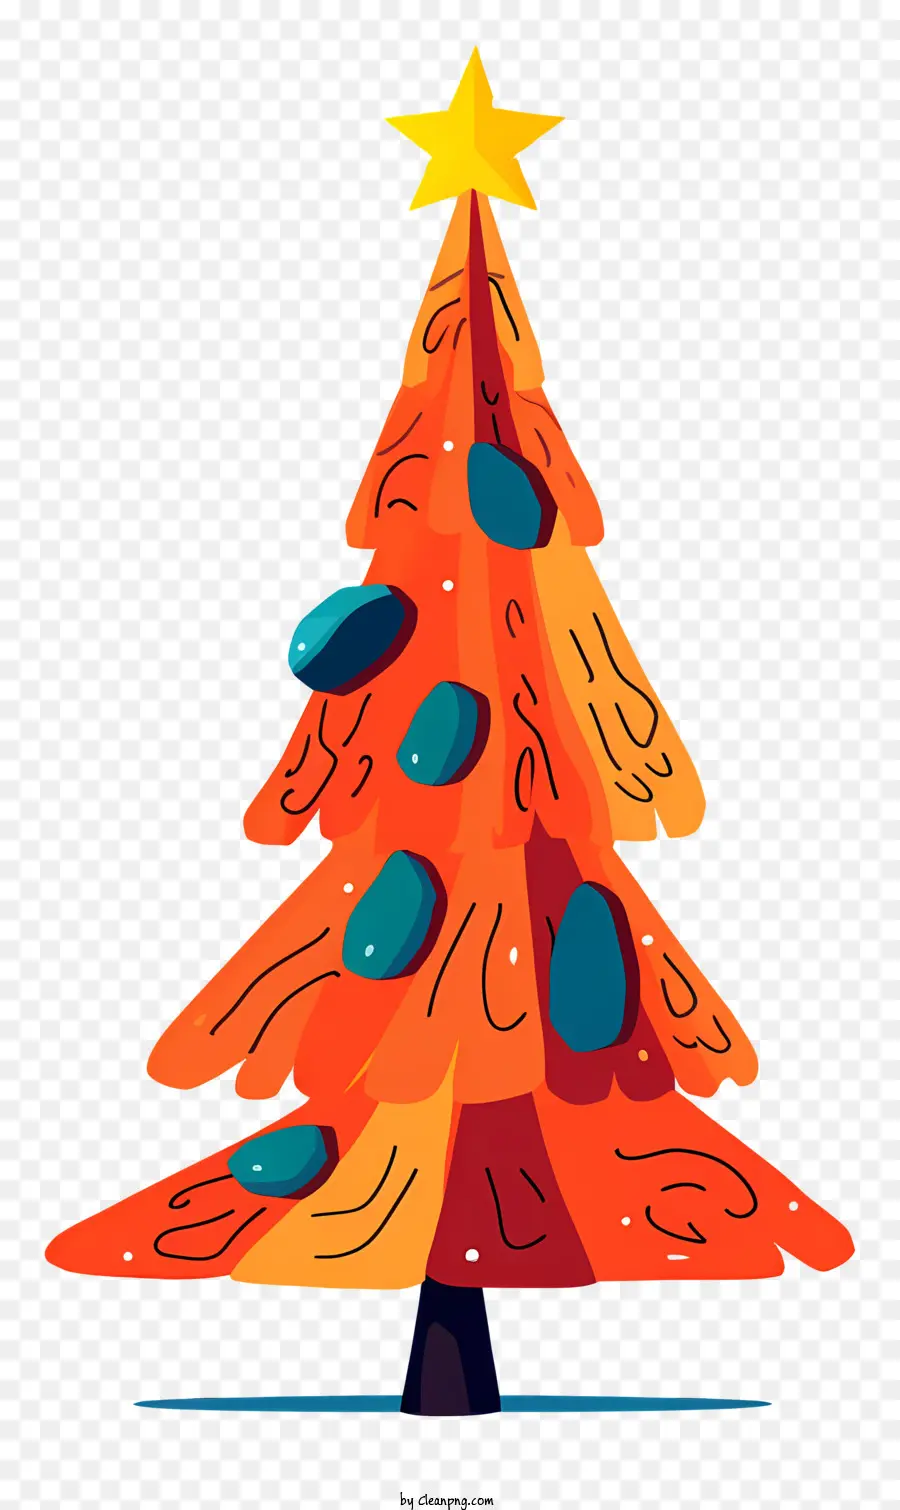 Weihnachtsbaum - Buntes, kühner Weihnachtsbaum mit Sternen, gut definiert